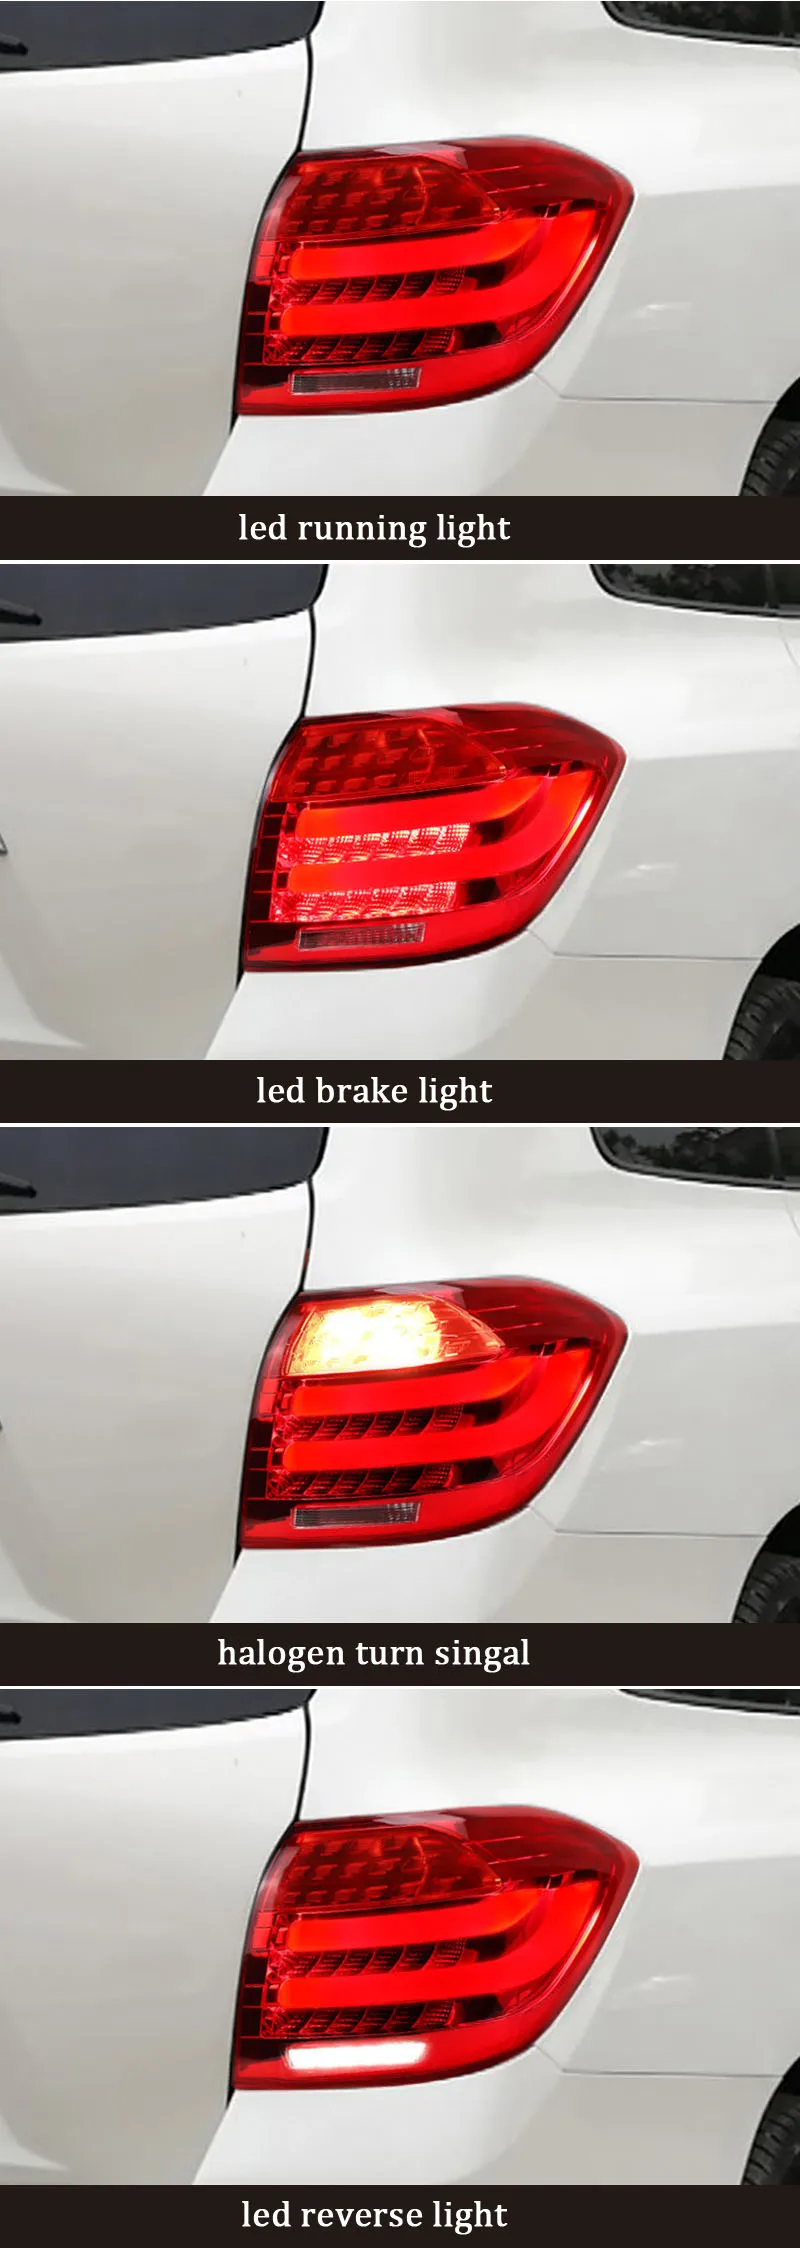 Автомобильный Стайлинг задний фонарь для Toyota Highlander 2008-2012 задний фонарь DRL+ Динамический сигнал поворота+ задний фонарь+ светодиодный тормоз